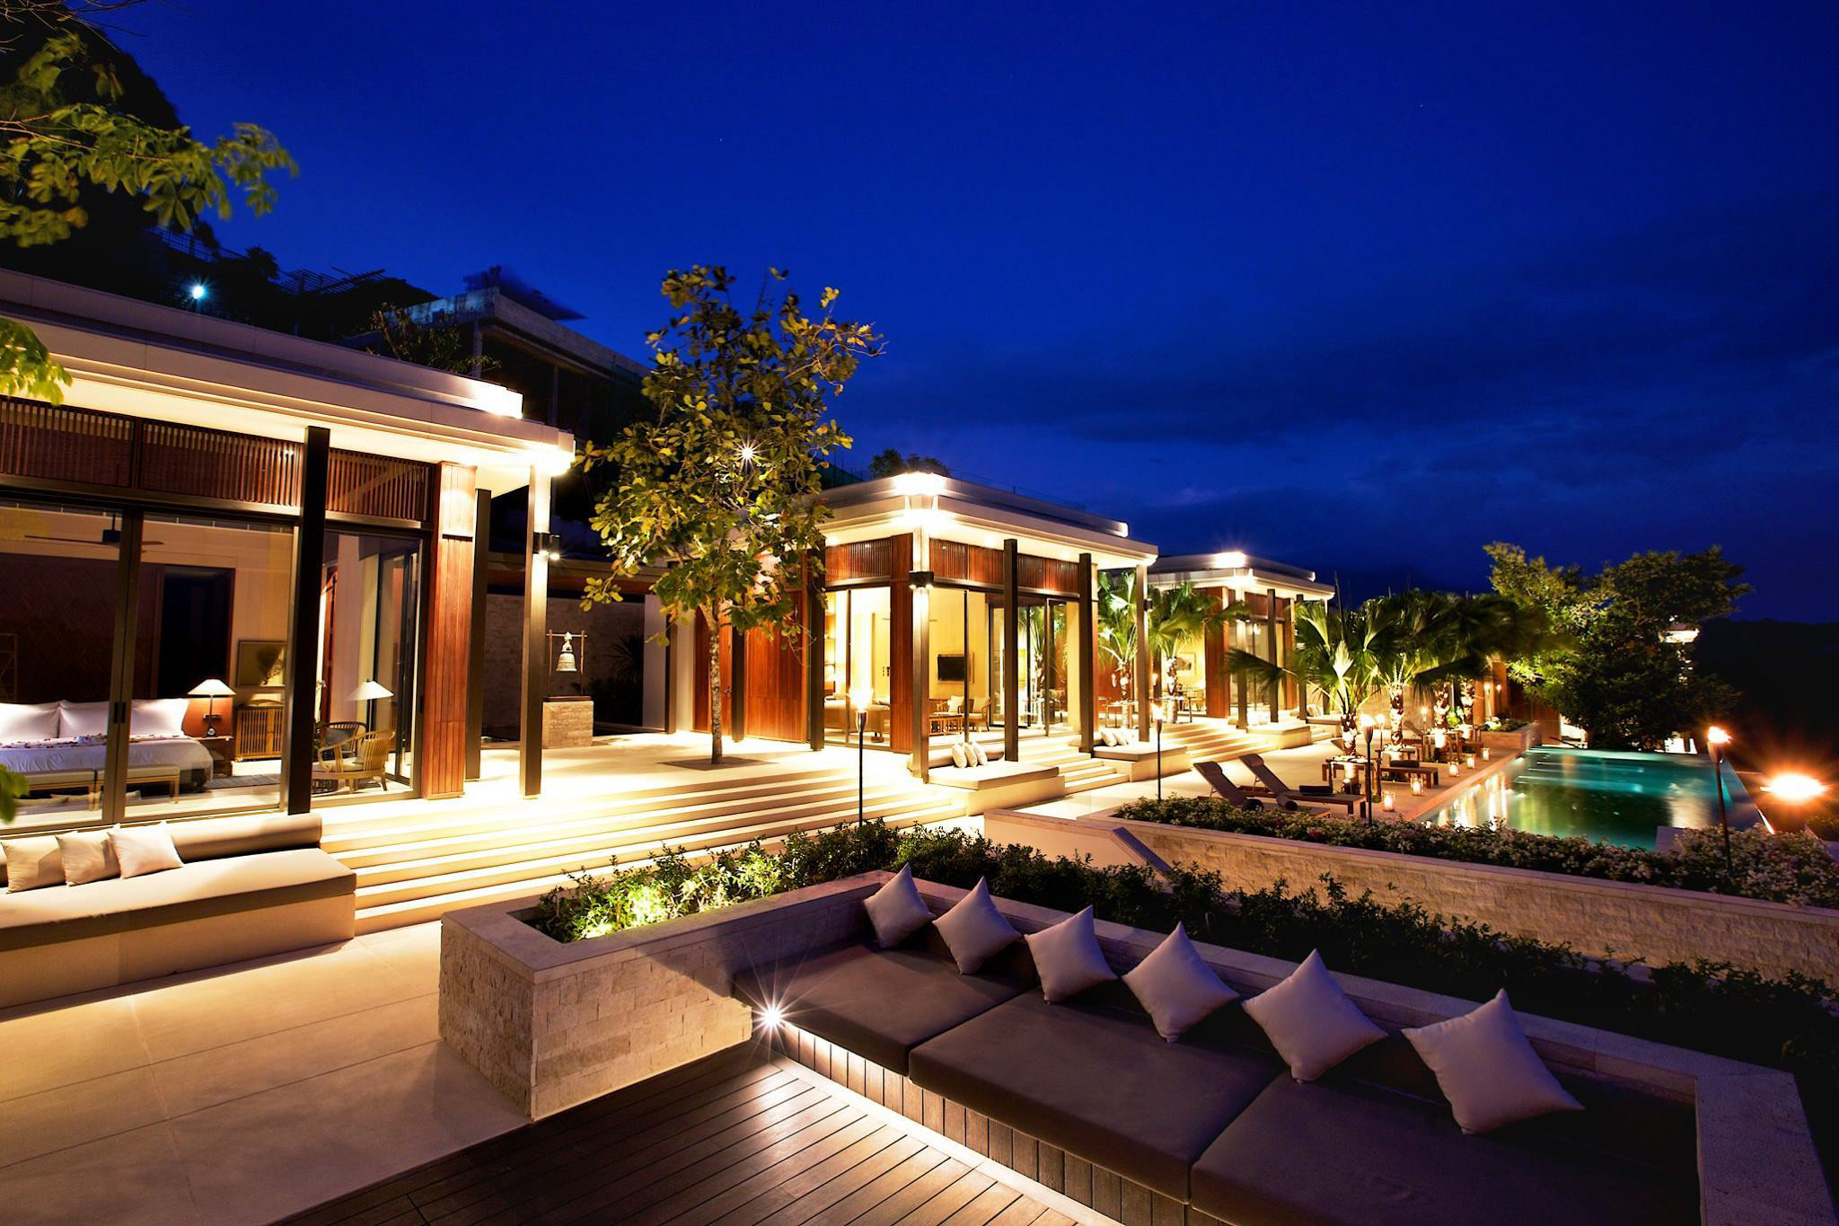 Anantara Layan Phuket Resort & Residences – Thailand – Residence Night View